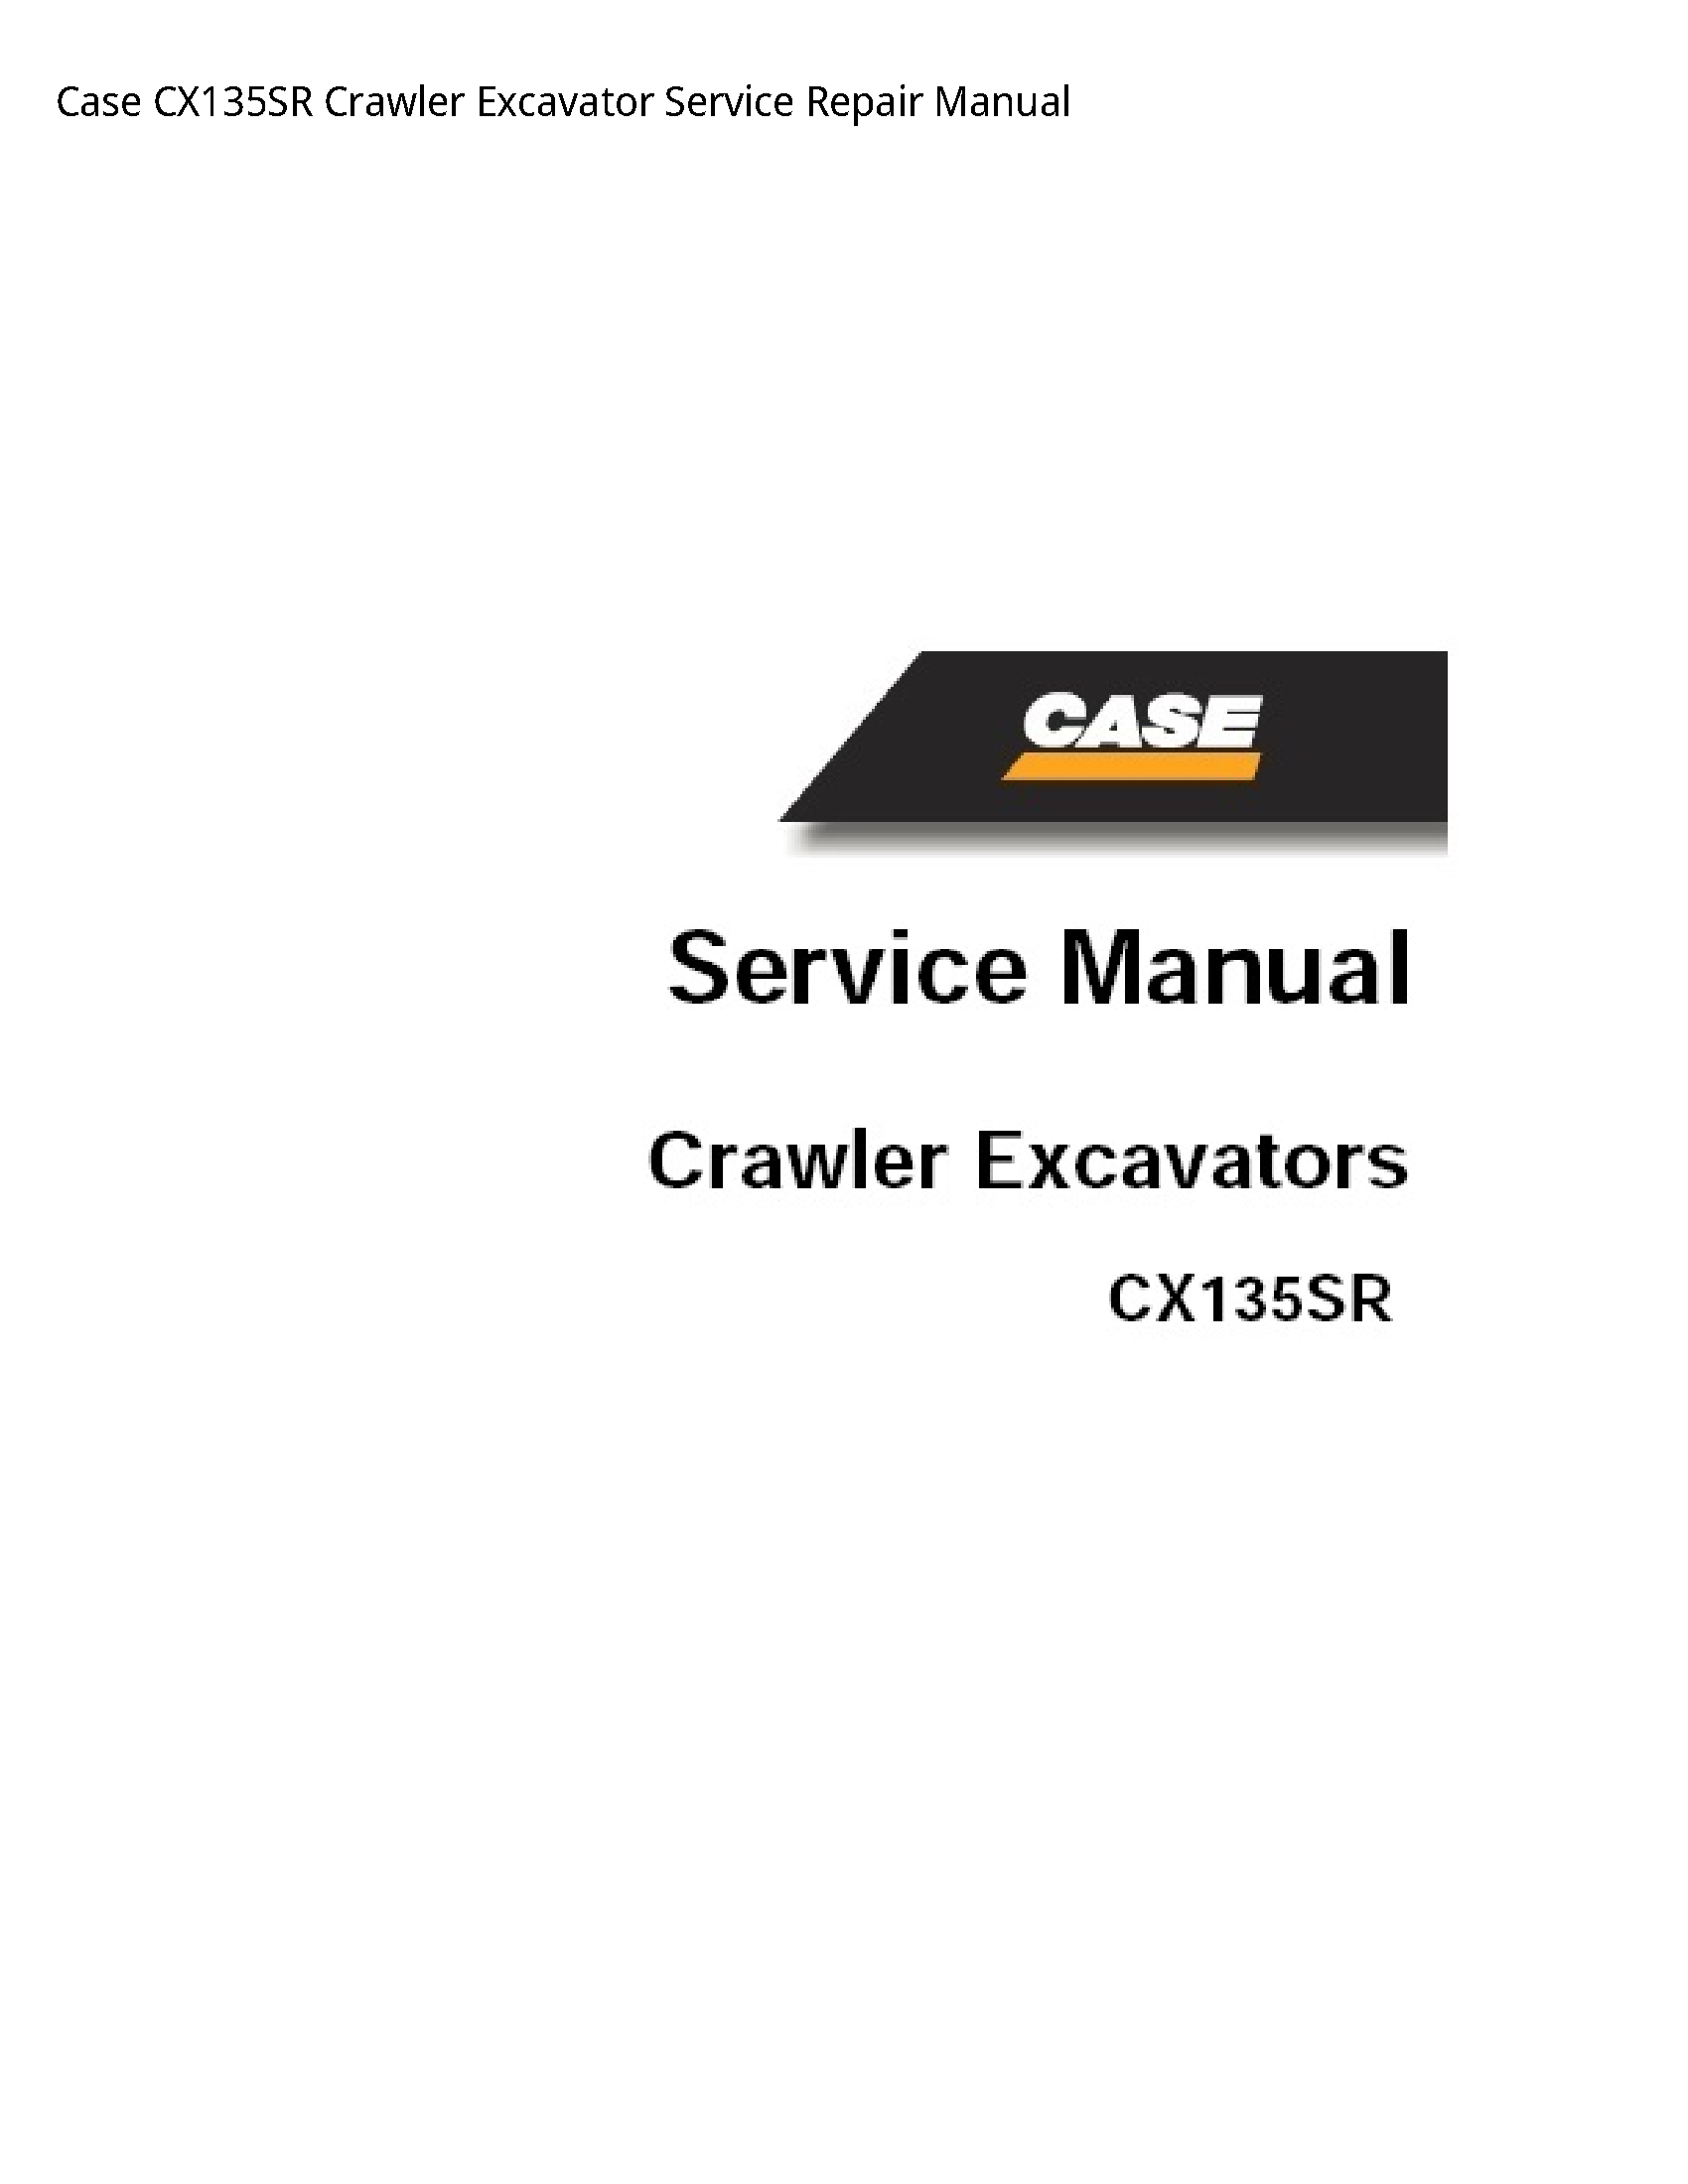 Case/Case IH CX135SR Crawler Excavator manual